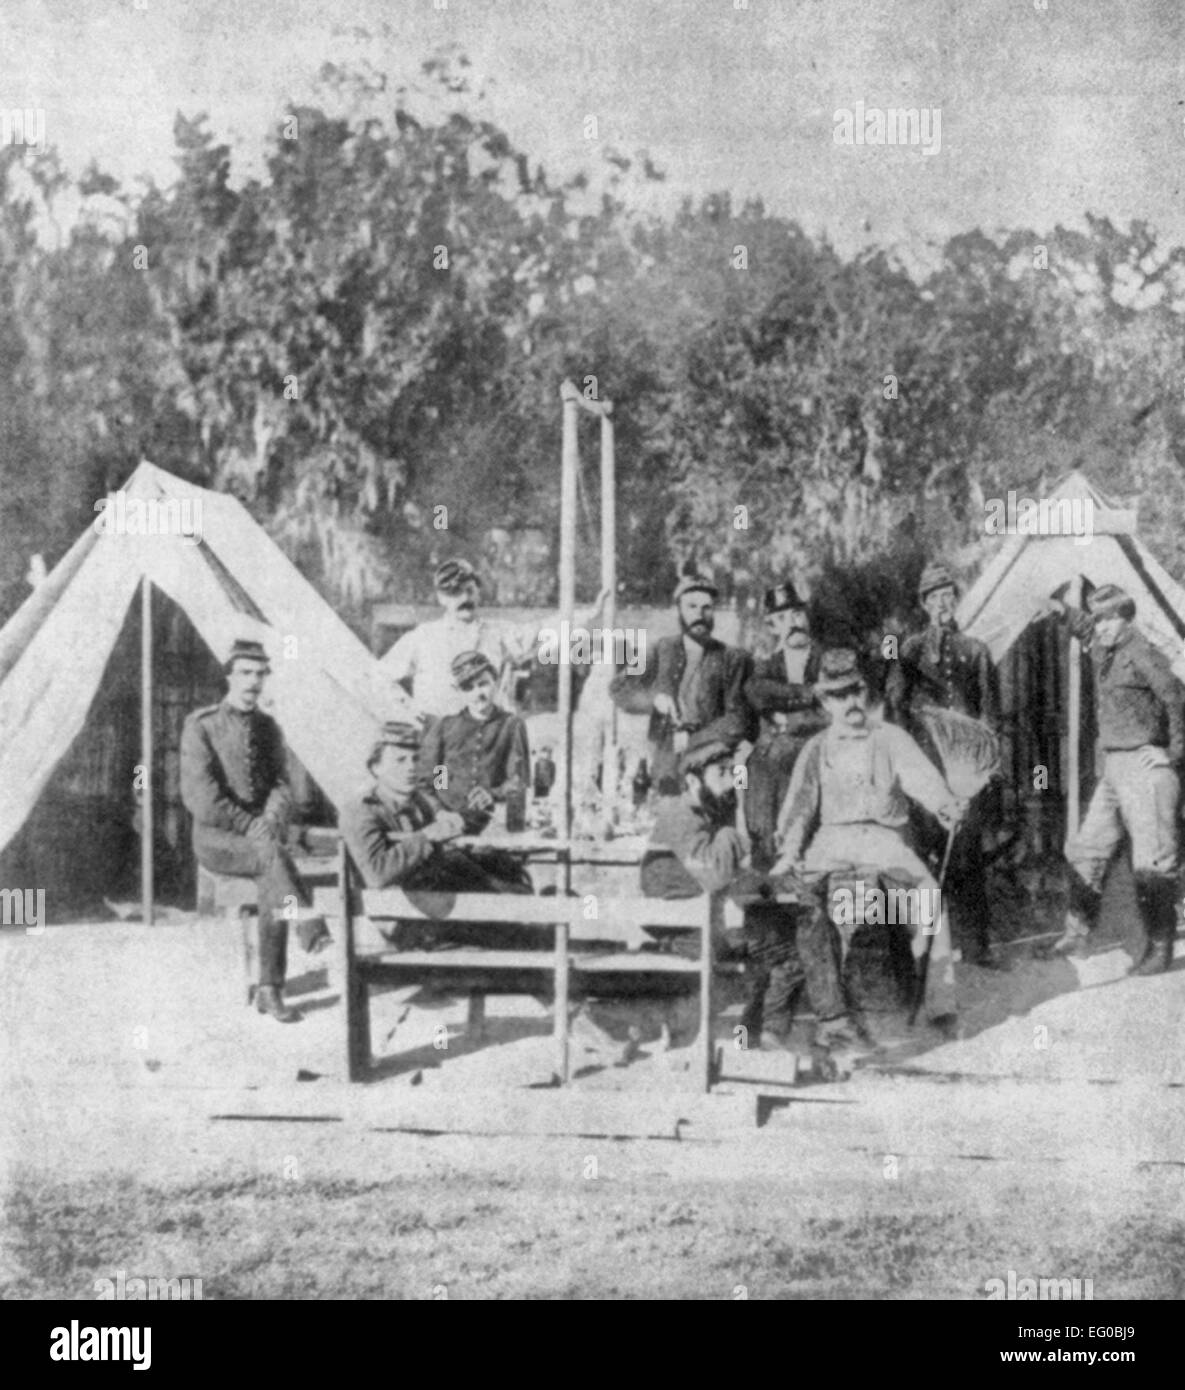 Artilleurs confédérés, membres du Régiment d'artillerie de Washington de La Nouvelle-Orléans, posé en face de tentes. Début 1862. Guerre civile USA Banque D'Images